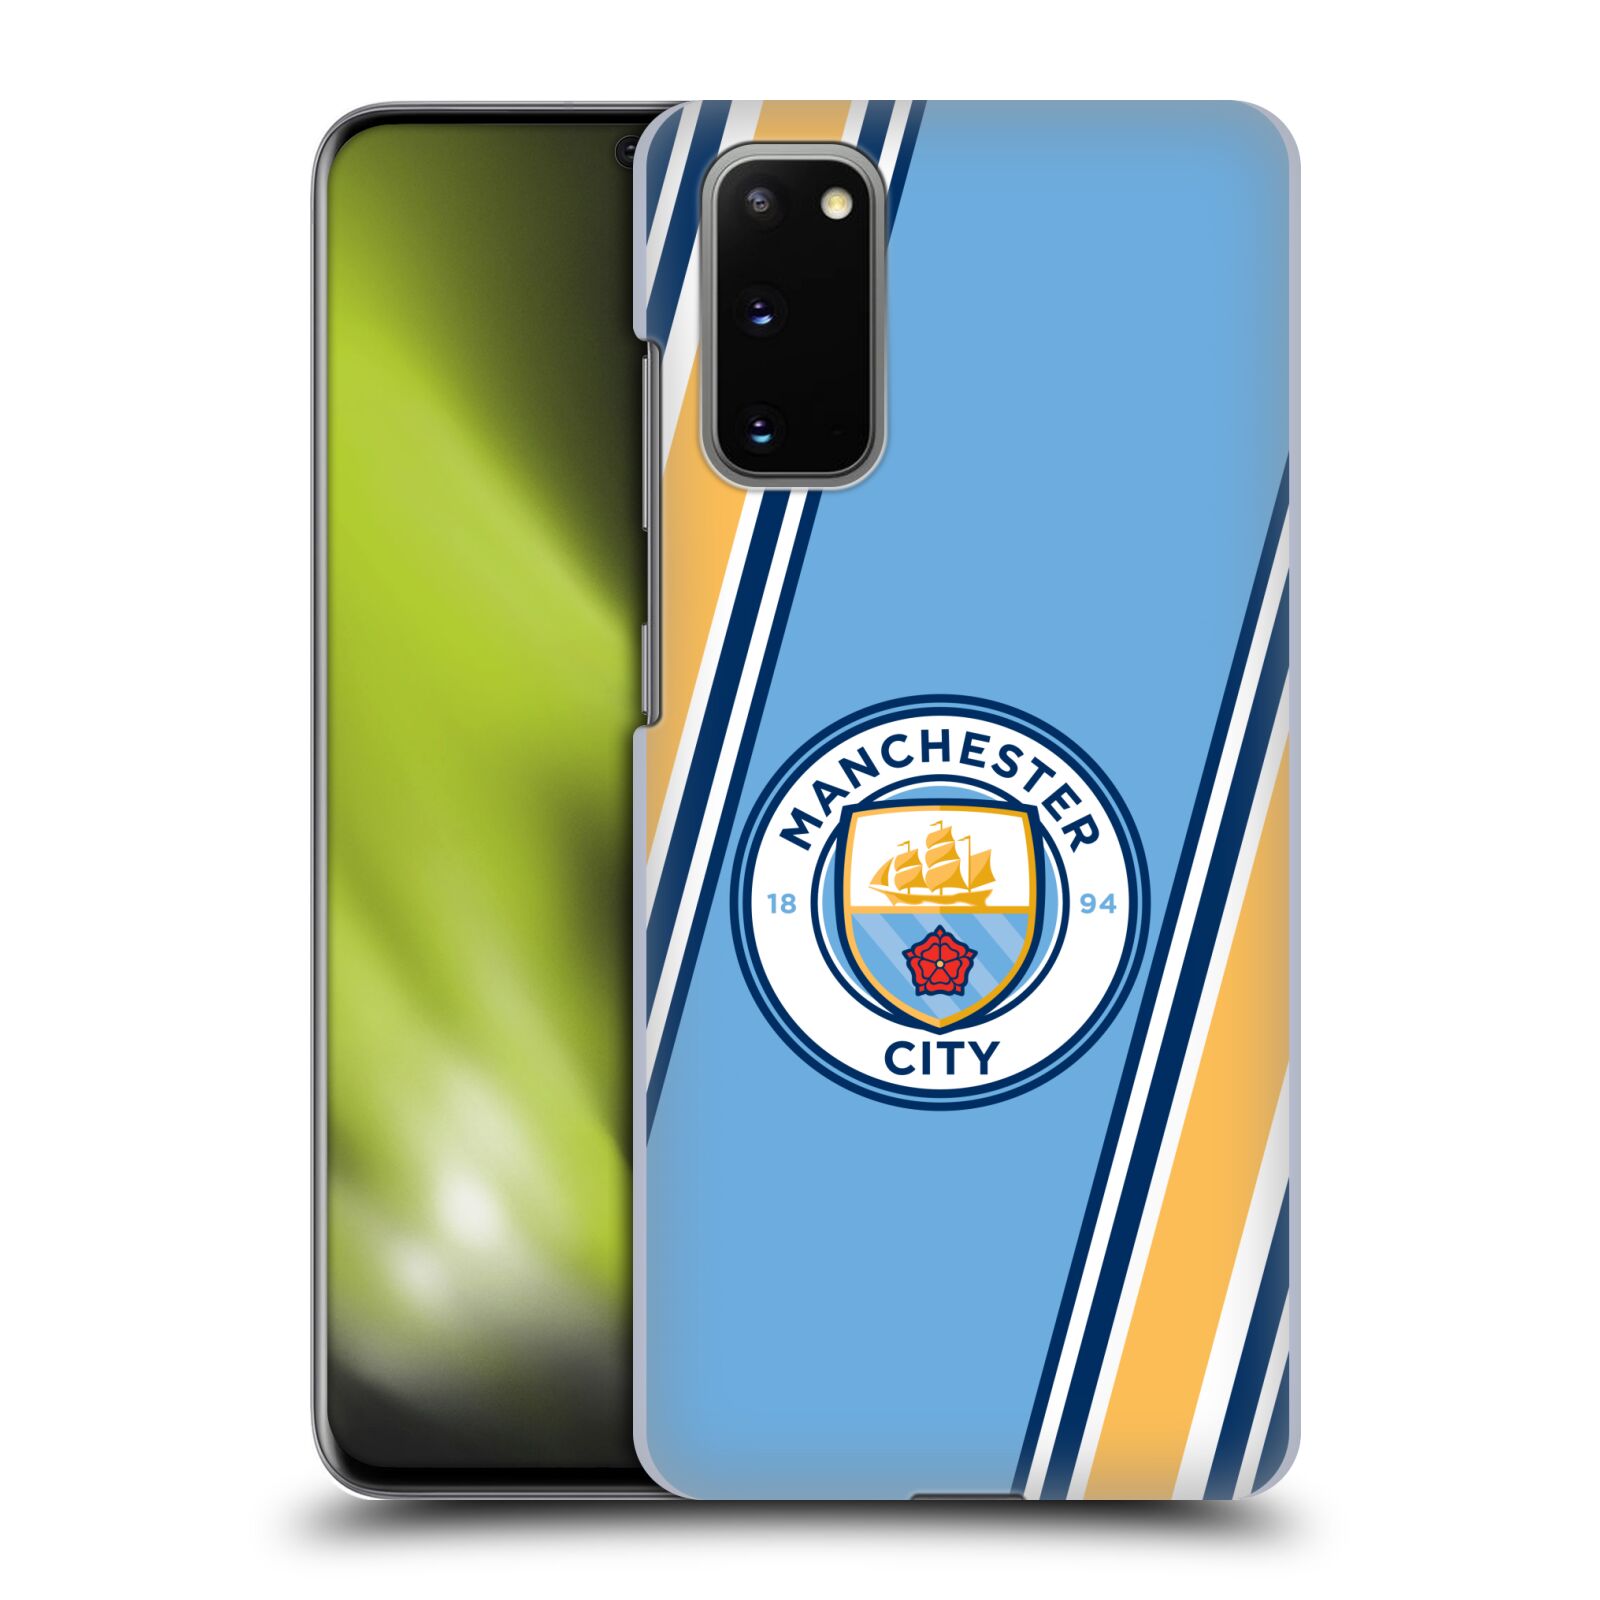 Pouzdro na mobil Samsung Galaxy S20 - HEAD CASE - Fotbalový klub Manchester City modrá barva žluté pruhy